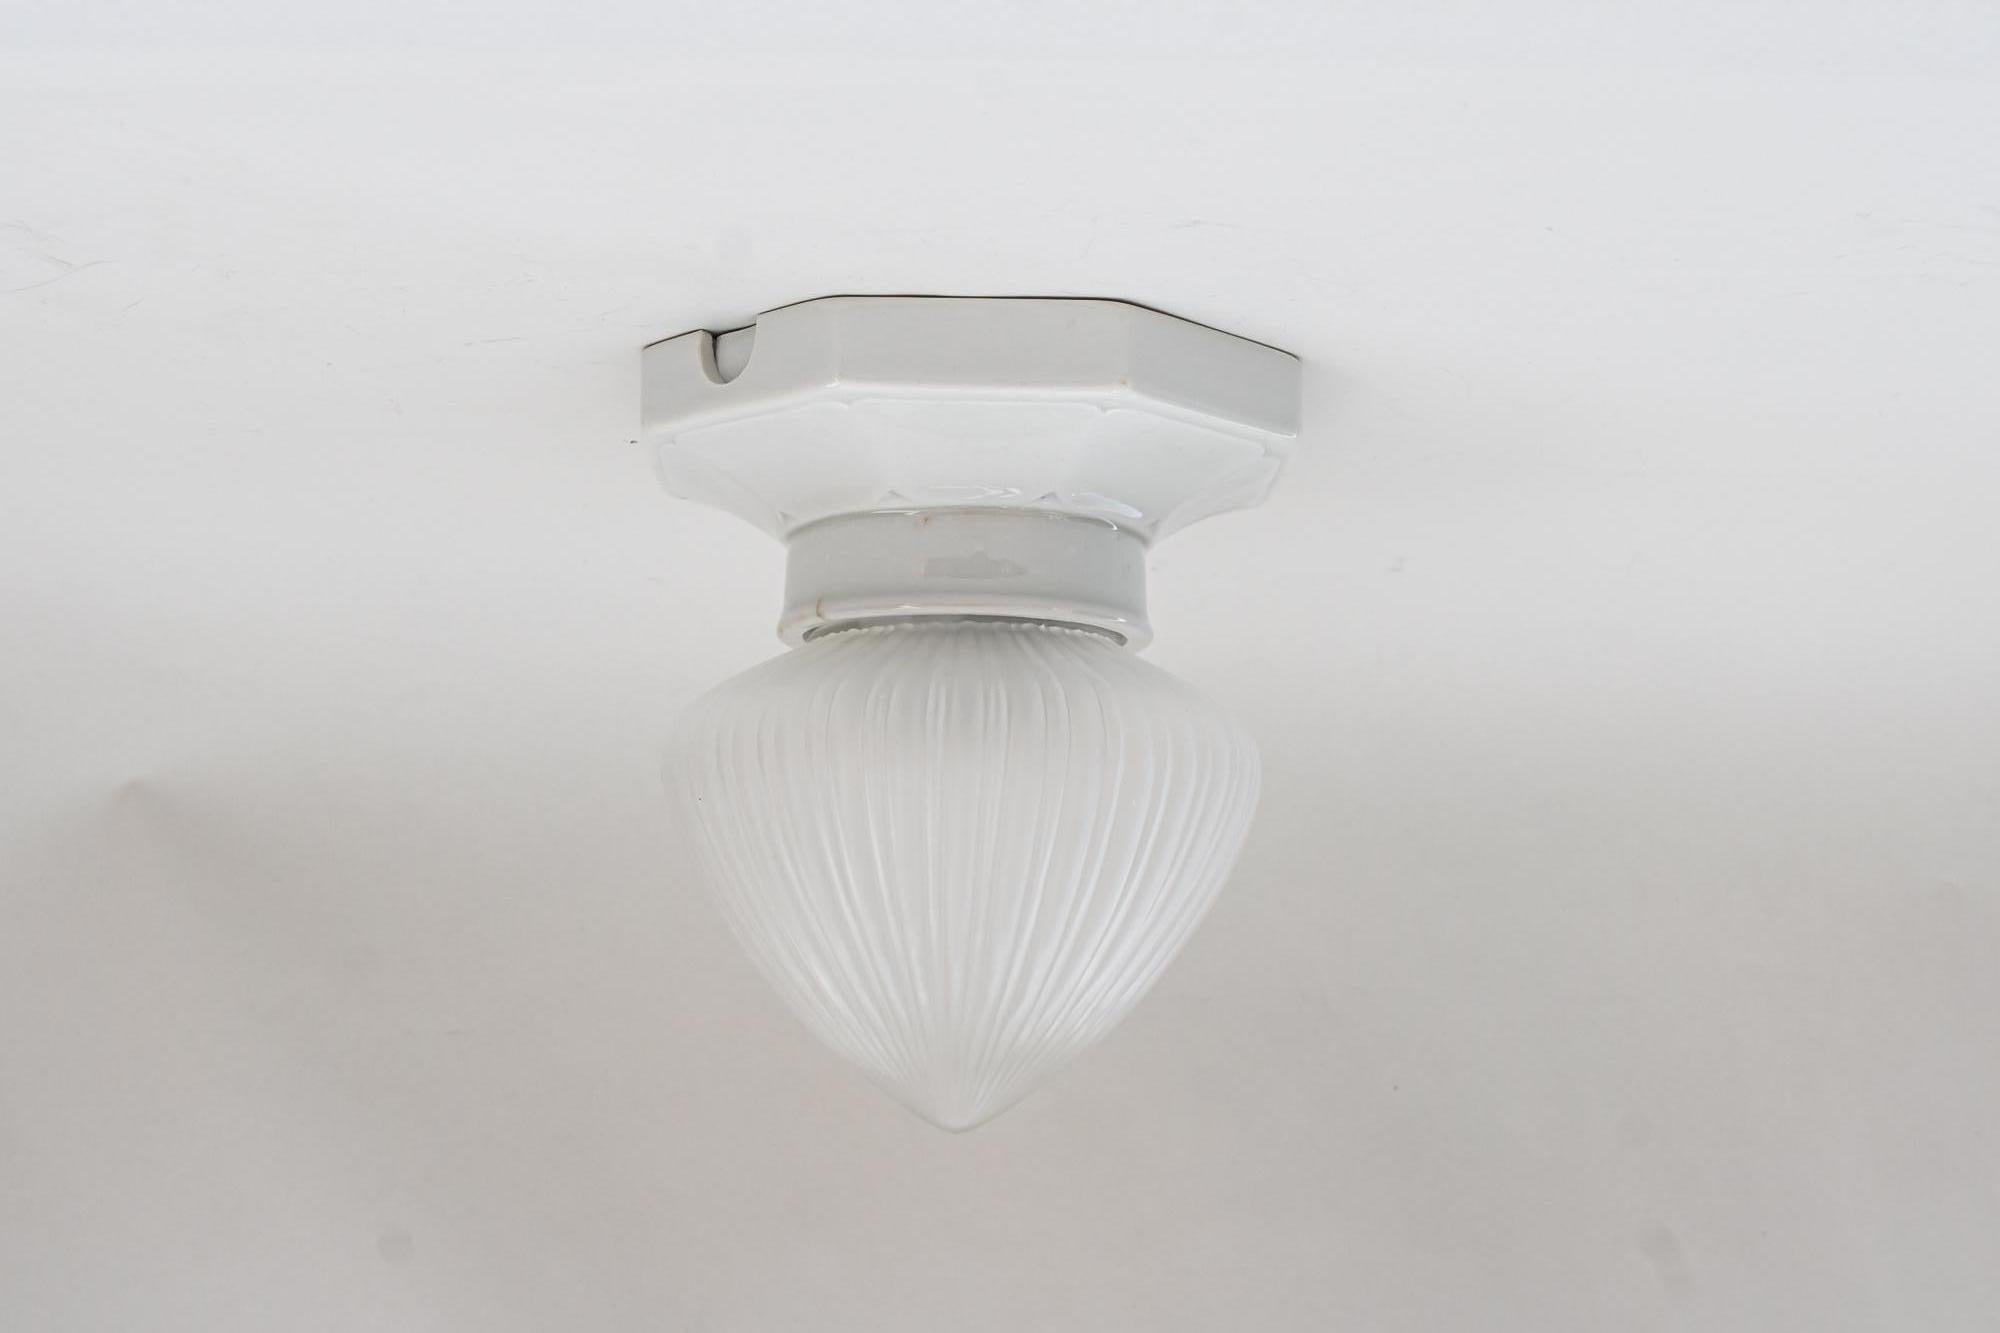 Art Deco Bauhaus porcelain ceiling lamp with original glass, circa 1920s
Original condition.